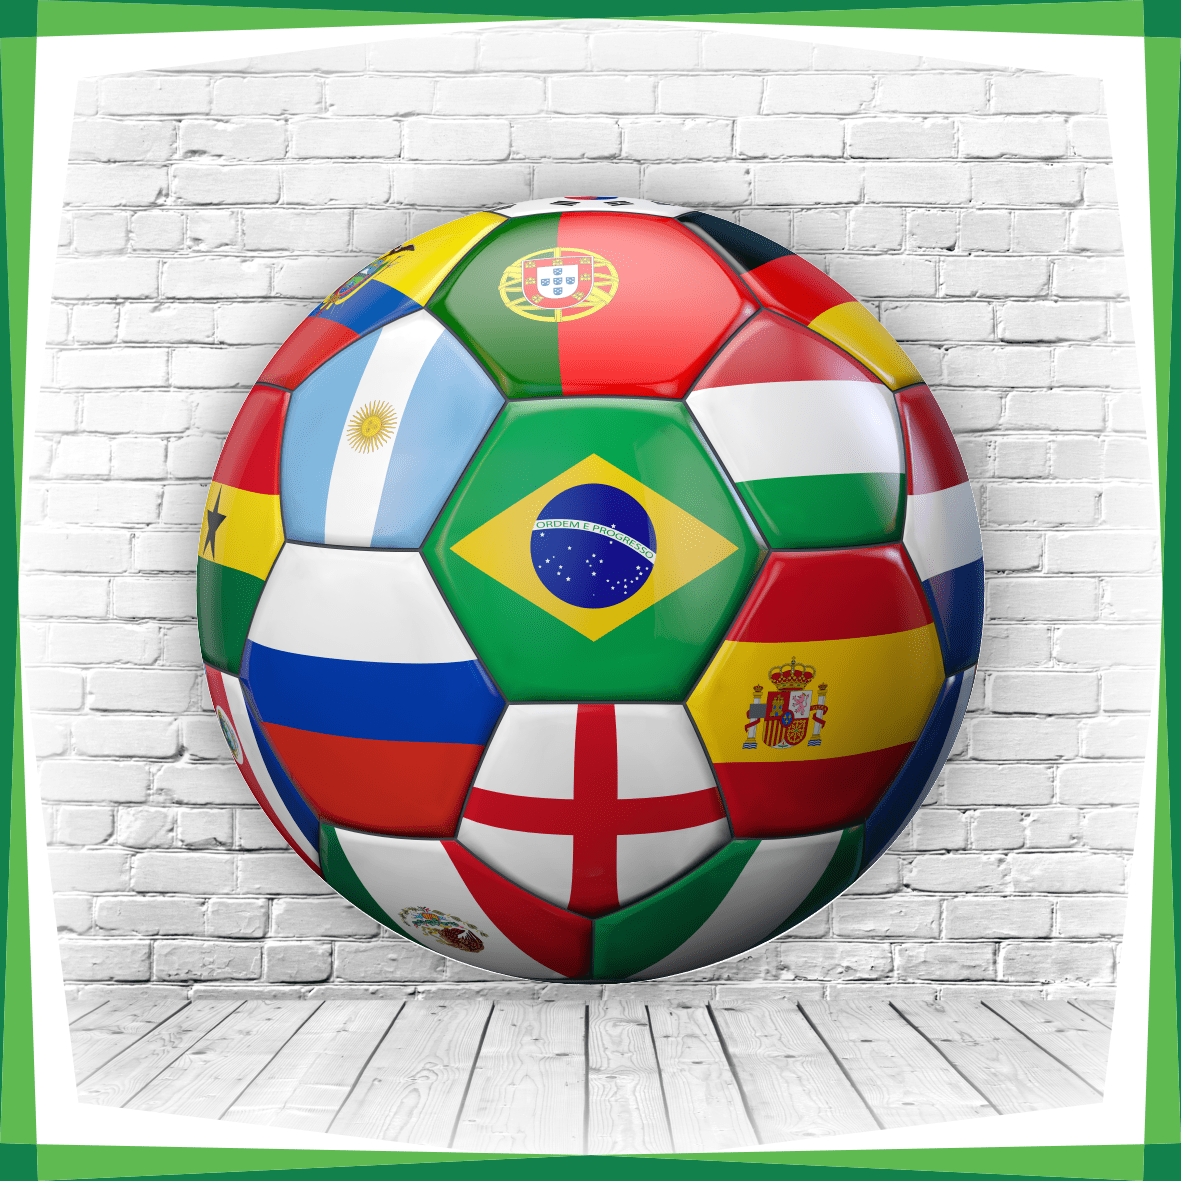 Bola da final da Copa do Mundo será dourada, diz site